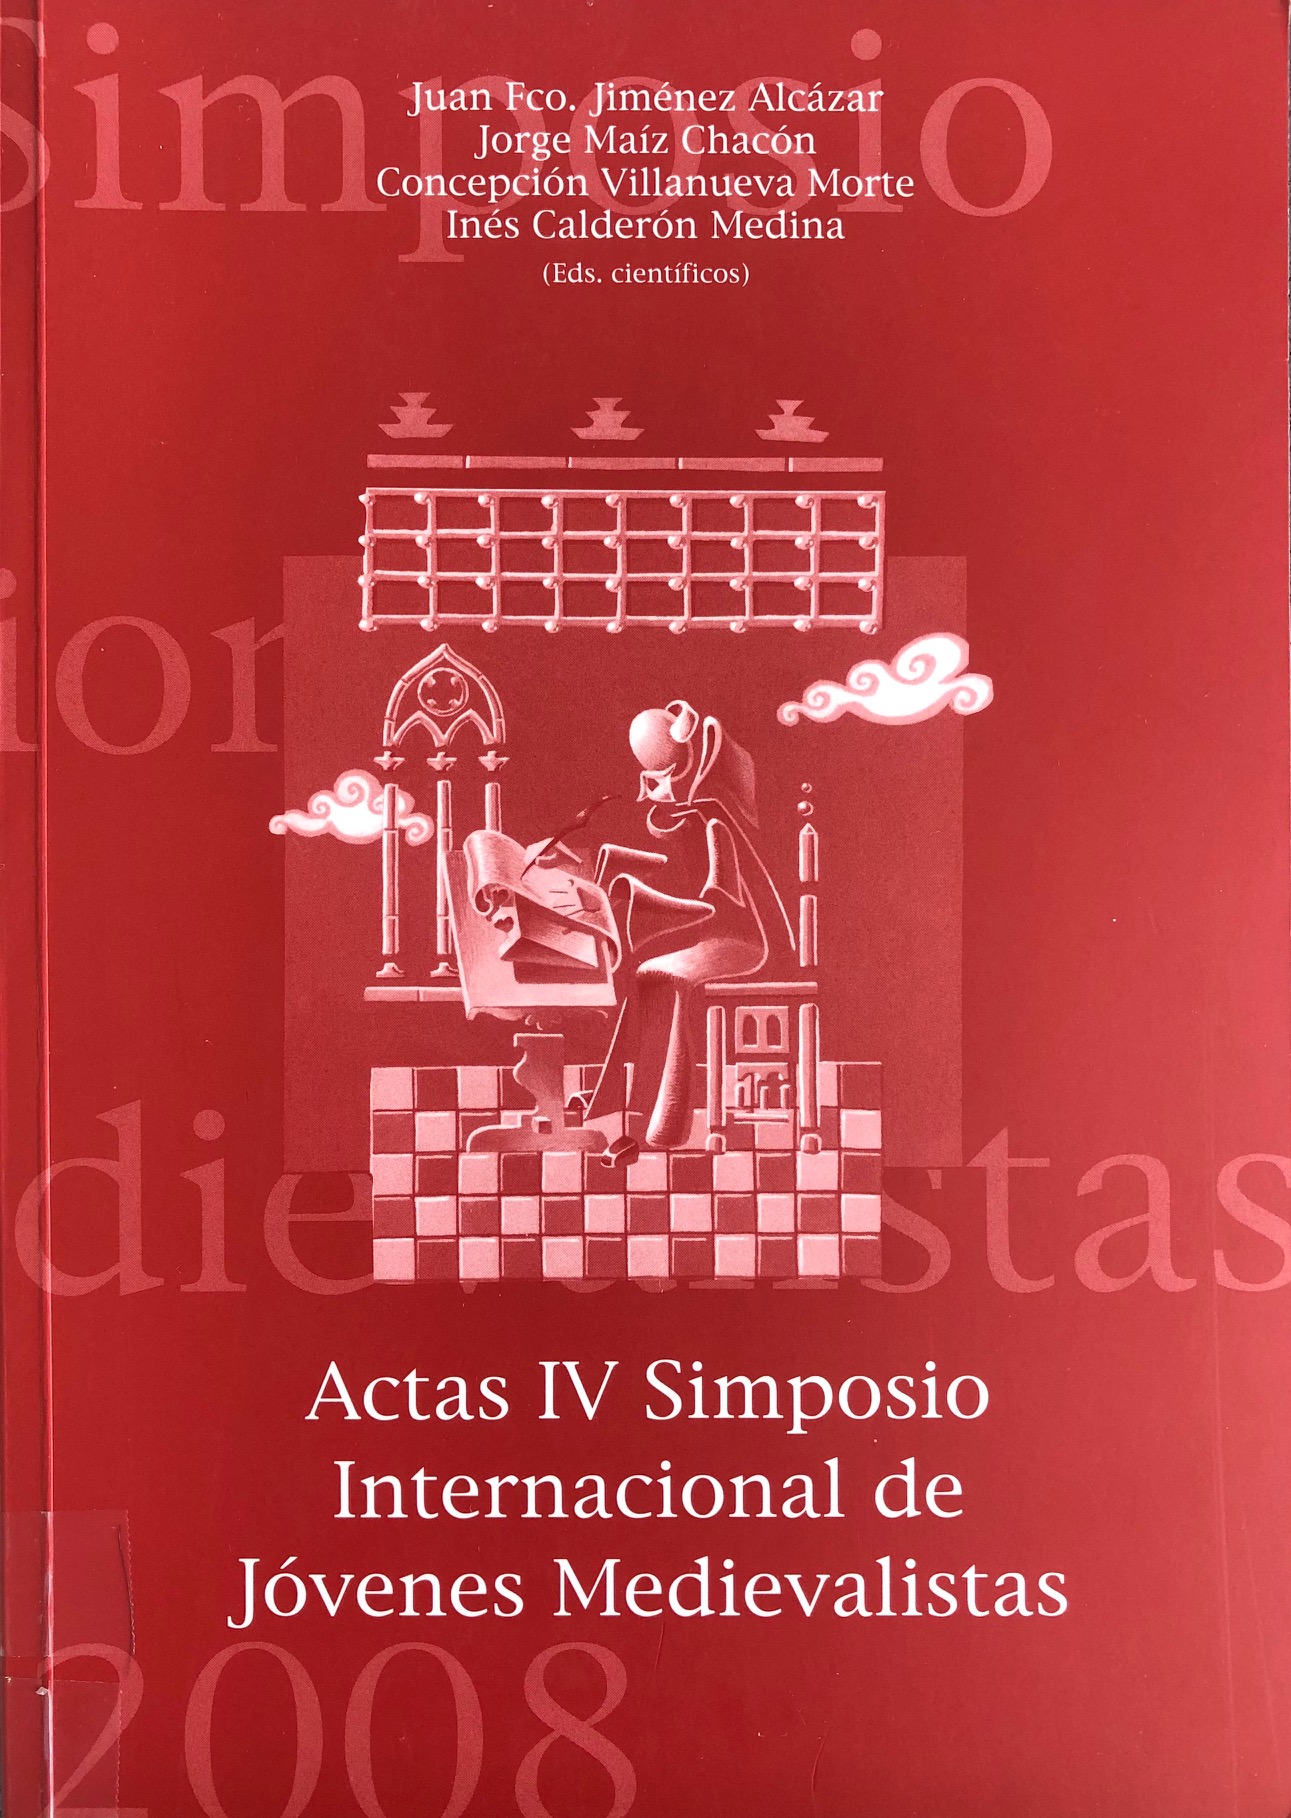 Imagen de portada del libro Actas del IV Simposio Internacional de Jóvenes Medievalistas, Lorca 2008